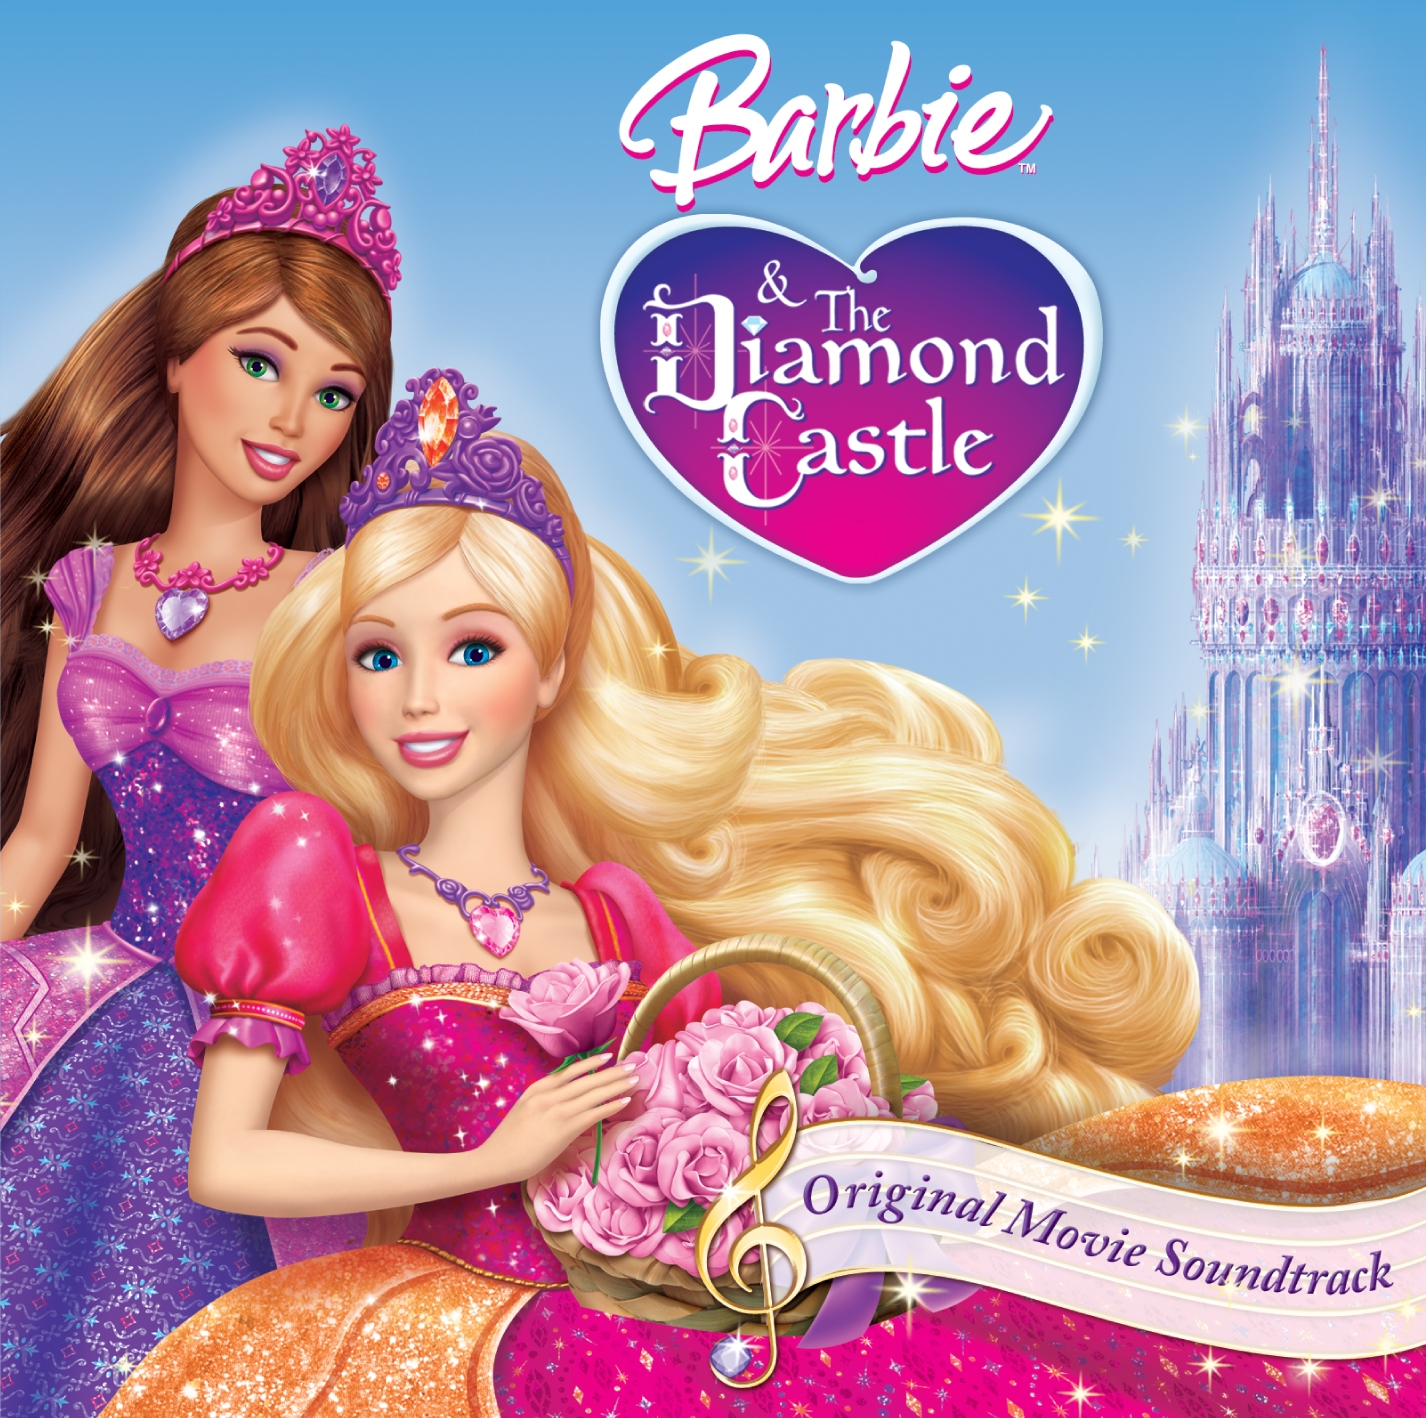 Believe | Barbie Movies Wiki | FANDOM powered by Wikia